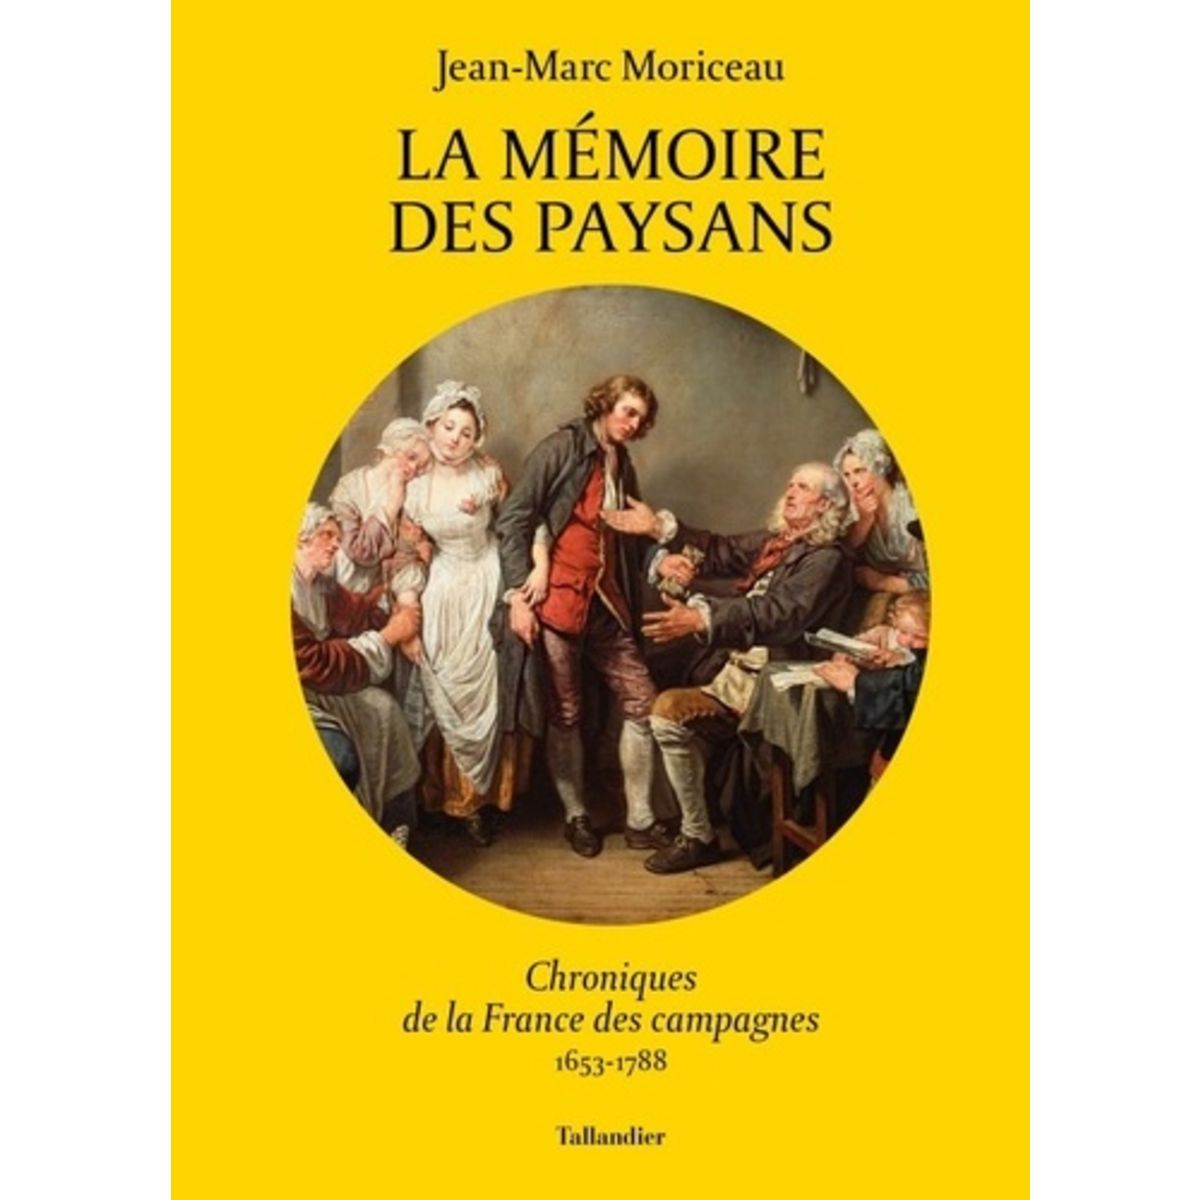  LA MEMOIRE DES PAYSANS. CHRONIQUES DE LA FRANCE DES CAMPAGNES 1653-1788, Moriceau Jean-Marc